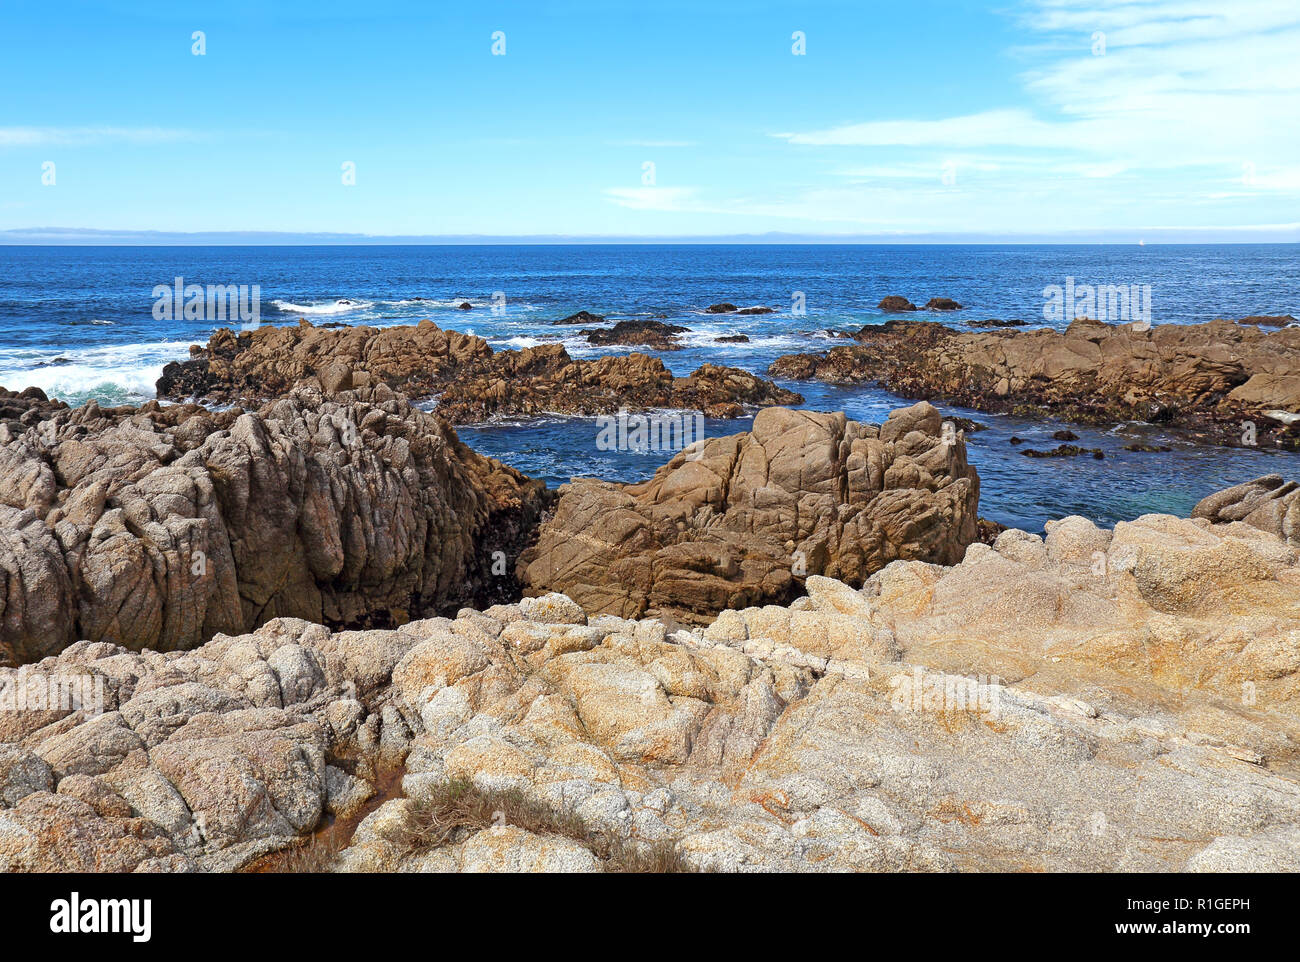 La bassa marea rivela alghe e pozze di marea al di sotto di promontori rocciosi a stato Asilomar Beach in Pacific Grove sulla penisola di Monterey in California Foto Stock